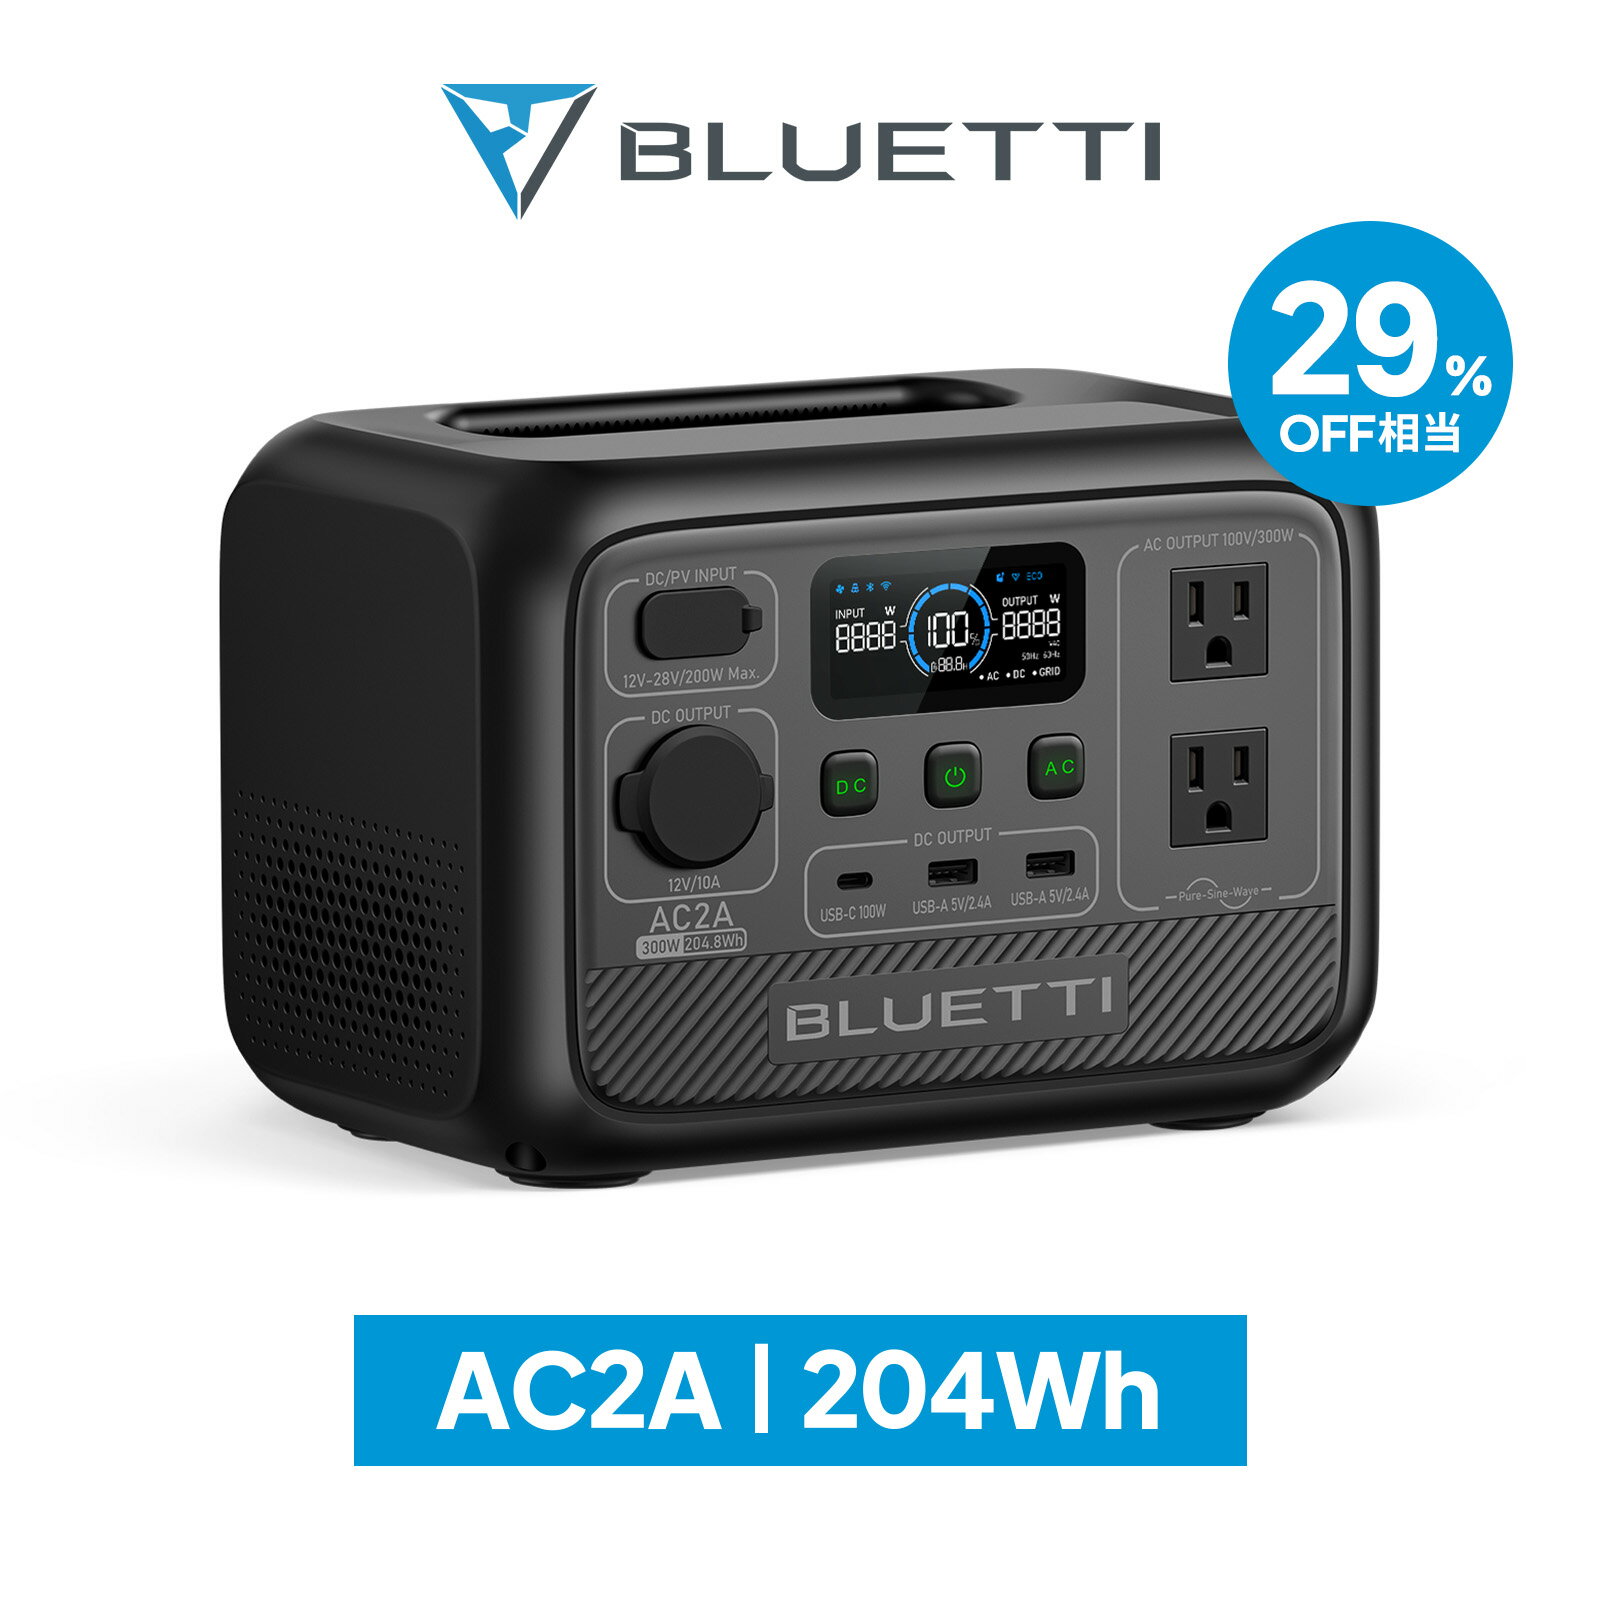 商品説明 【多様な出力ポート】 リン酸鉄リチウム電池と300Wインバーターを搭載した容量204WhのAC2Aは、重量わずか3.6kgで、AC出力ポート × 2、USB-A × 2、USB-C（100W）、シガーソケット出力を含む6つの出力ポートを備えています。 【急速充電】 AC2Aは3つのAC充電モードがあり、BLUETTIアプリで急速充電モードをオンにすると、最大270Wの入力でAC2Aを45分で0から80%まで、70分で100%まで充電できます。また、AC+ソーラー充電 (最大270W）、ソーラー充電 (最大200W）、車充電、発電機充電にも対応しています。 【安全な非常用電源】 AC2Aは、安全なリン酸鉄リチウム電池と最先端のBMS (電池管理システム) を採用し、バッテリーの安全性と長寿命を実現しています。電量が完全切れでもオンにできる新設計で、他のバッテリーよりも非常用電源としての長期保存に適しています。 【APP遠隔操作】 BLUETTI専用のアプリを使えば、スマホでAC2Aの状態監視、充放電モードの設定、バッテリーバージョンアップなどができます。スマートな管理は簡単に実現できます。 【メーカー保証】 BLUETTI AC2Aはご注文日から5年のサポート(保証)が付いております。品質には万全を期しておりますが、万が一不良・破損・誤納品など、および正常使用による不具合の場合は、無料修理/交換の対象となります。ご購入後何かございましたら、迅速なご対応をさせていただきますので、ご遠慮無くお問い合わせください。「付属品」AC2A本体、AC充電ケーブル、MC4ソーラー充電ケーブル、接地用ネジと取扱説明書が付属します。 【ご注意点】 ※楽天市場におけるBLUETTI製品の正規直販サイトは、BLUETTI JAPAN（www.rakuten.ne.jp/gold/bluettijapan/）のみです。他のショップ及び転売者様よりご購入された場合は、BLUETTI保証サービスの適用は除外されますので、予めご了承願います。